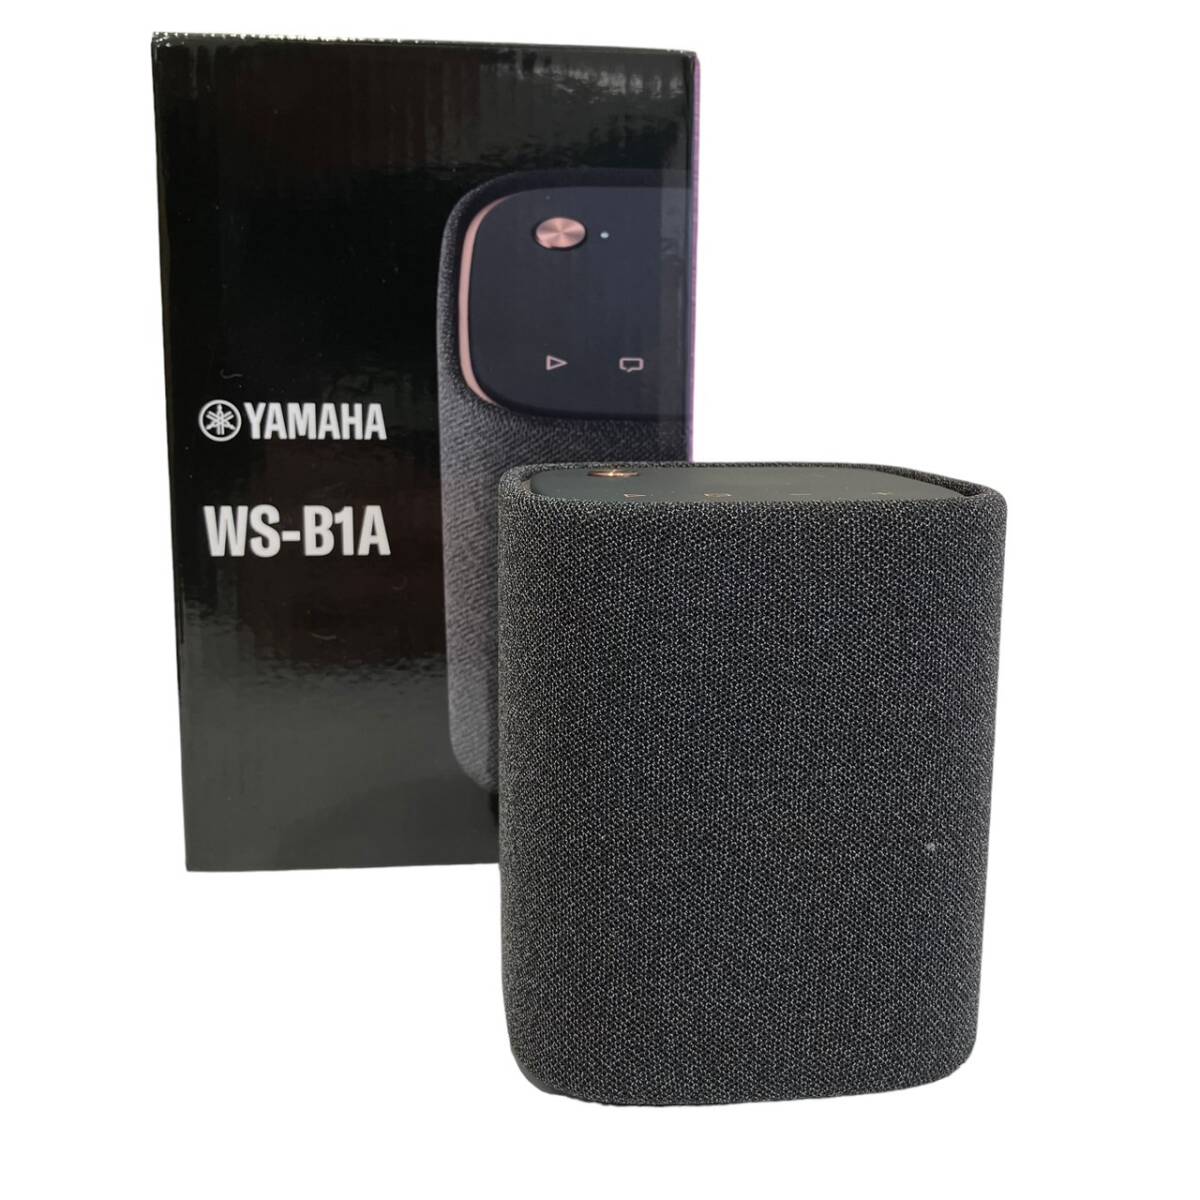 YAMAHA WS-B1A Bluetooth ワイヤレススピーカー ブラック オーディオ機器の画像1